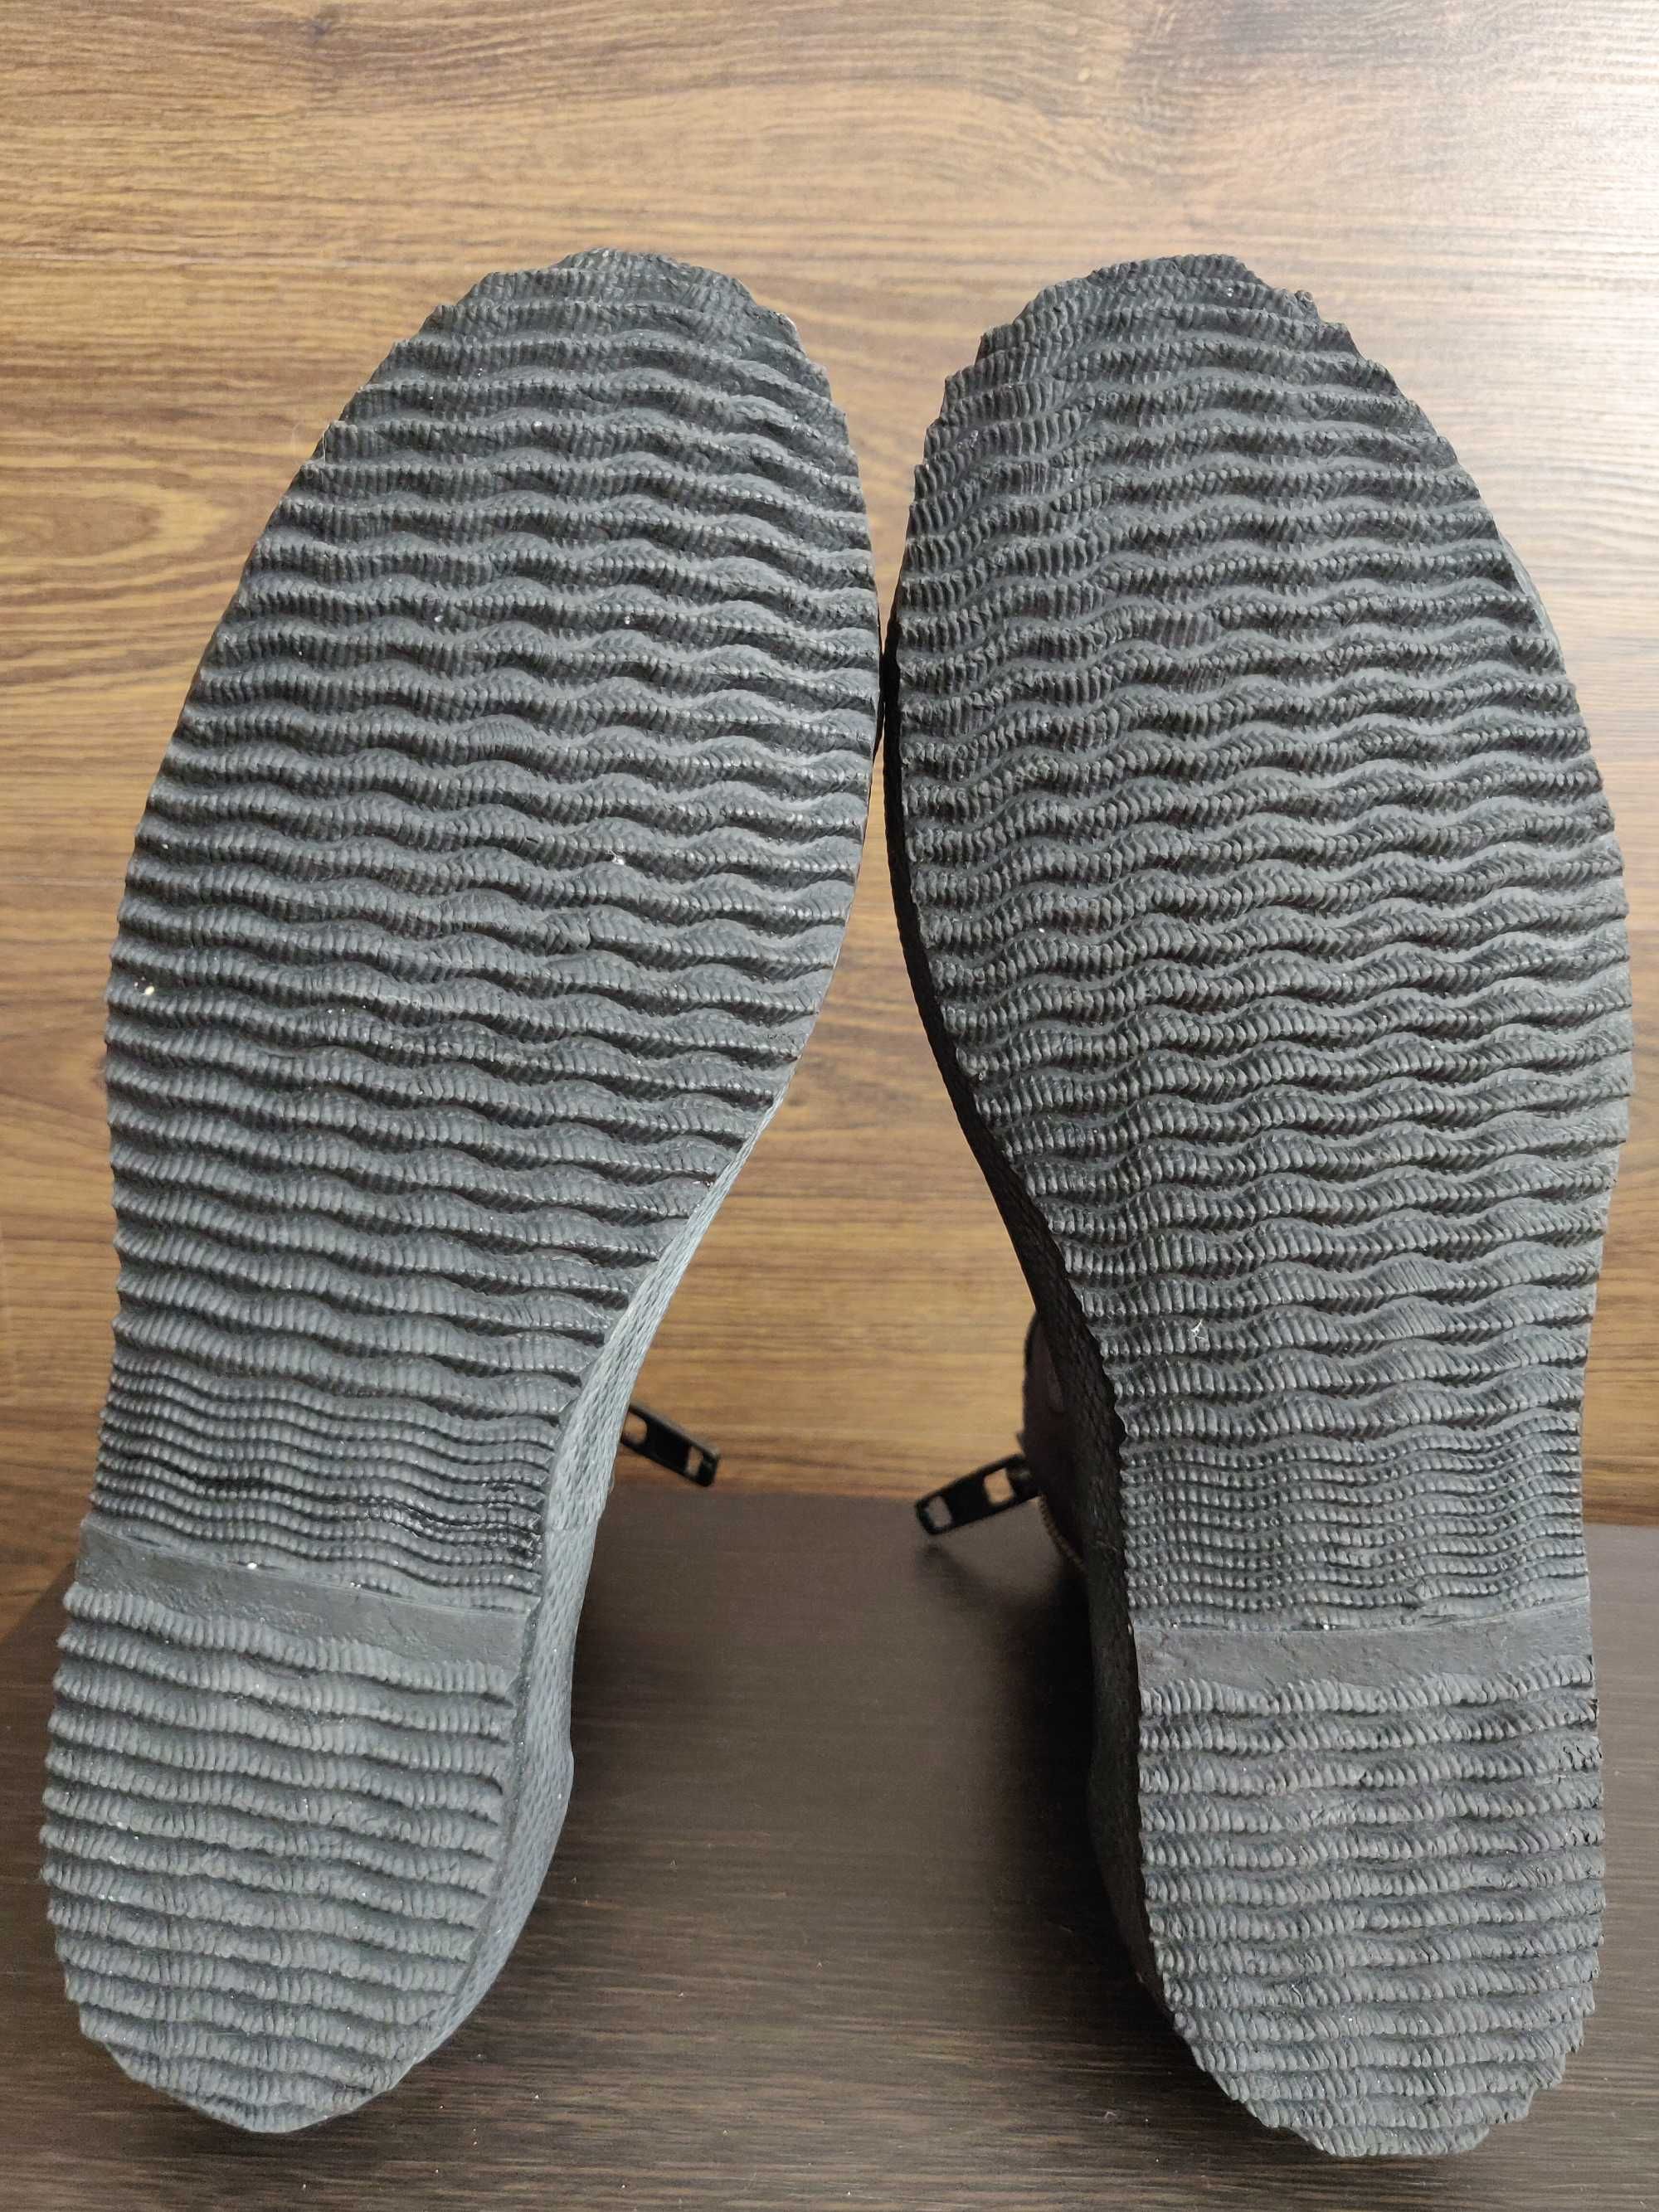 Неопреновые ботинки, боты для дайвинга Sepadiver (Italy) M р. 40